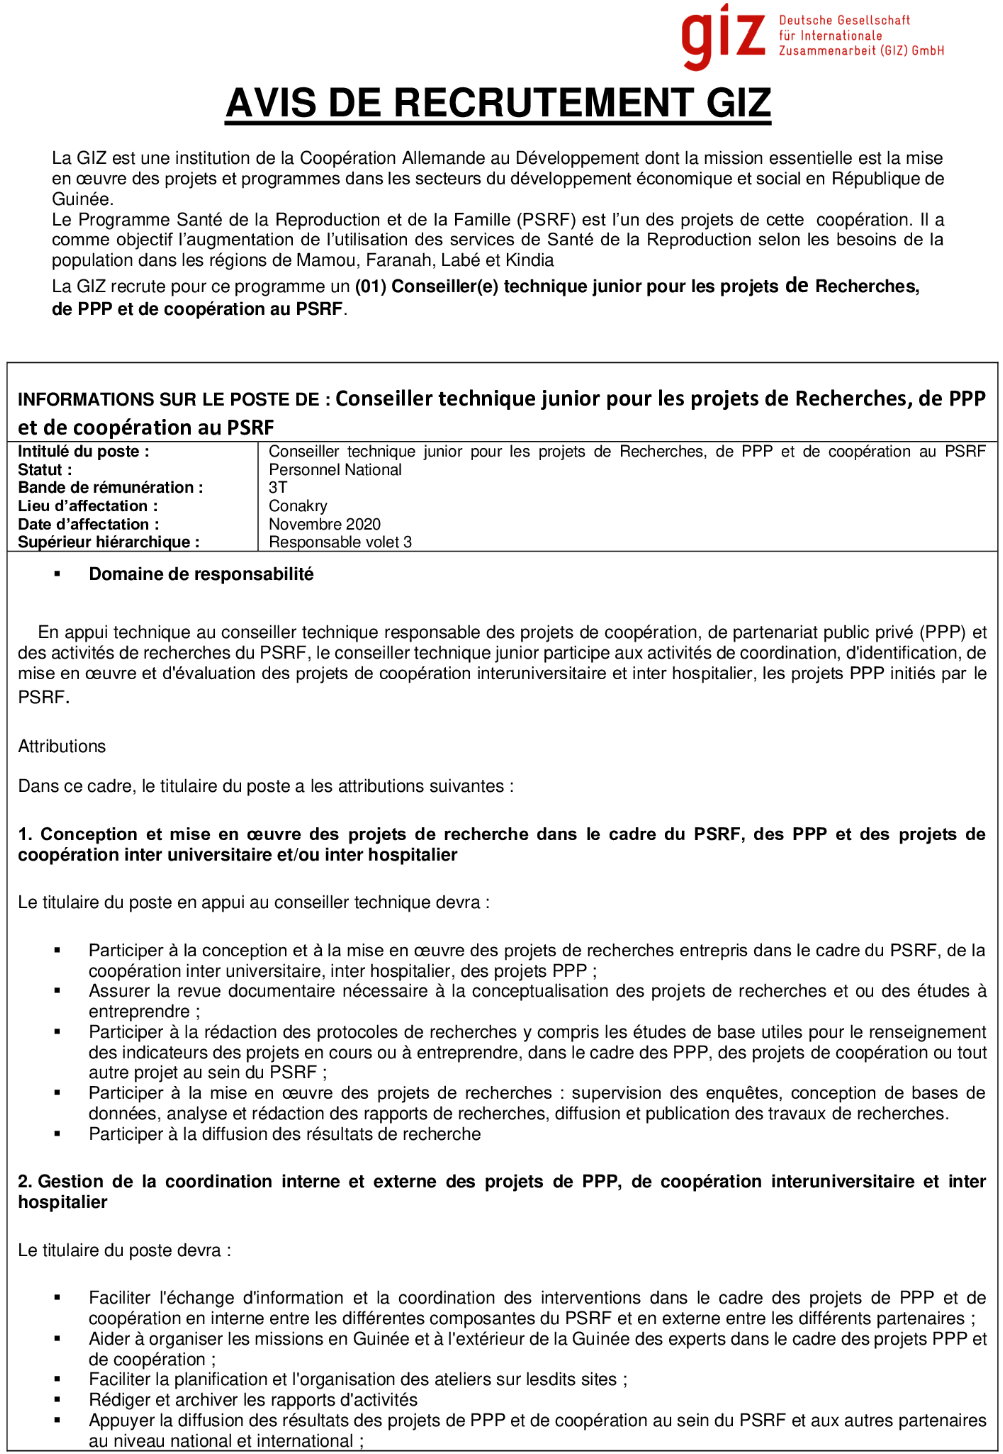 Recrutement d'Un Conseiller technique par giz en guinée - offre d'emploi Giz - page 1